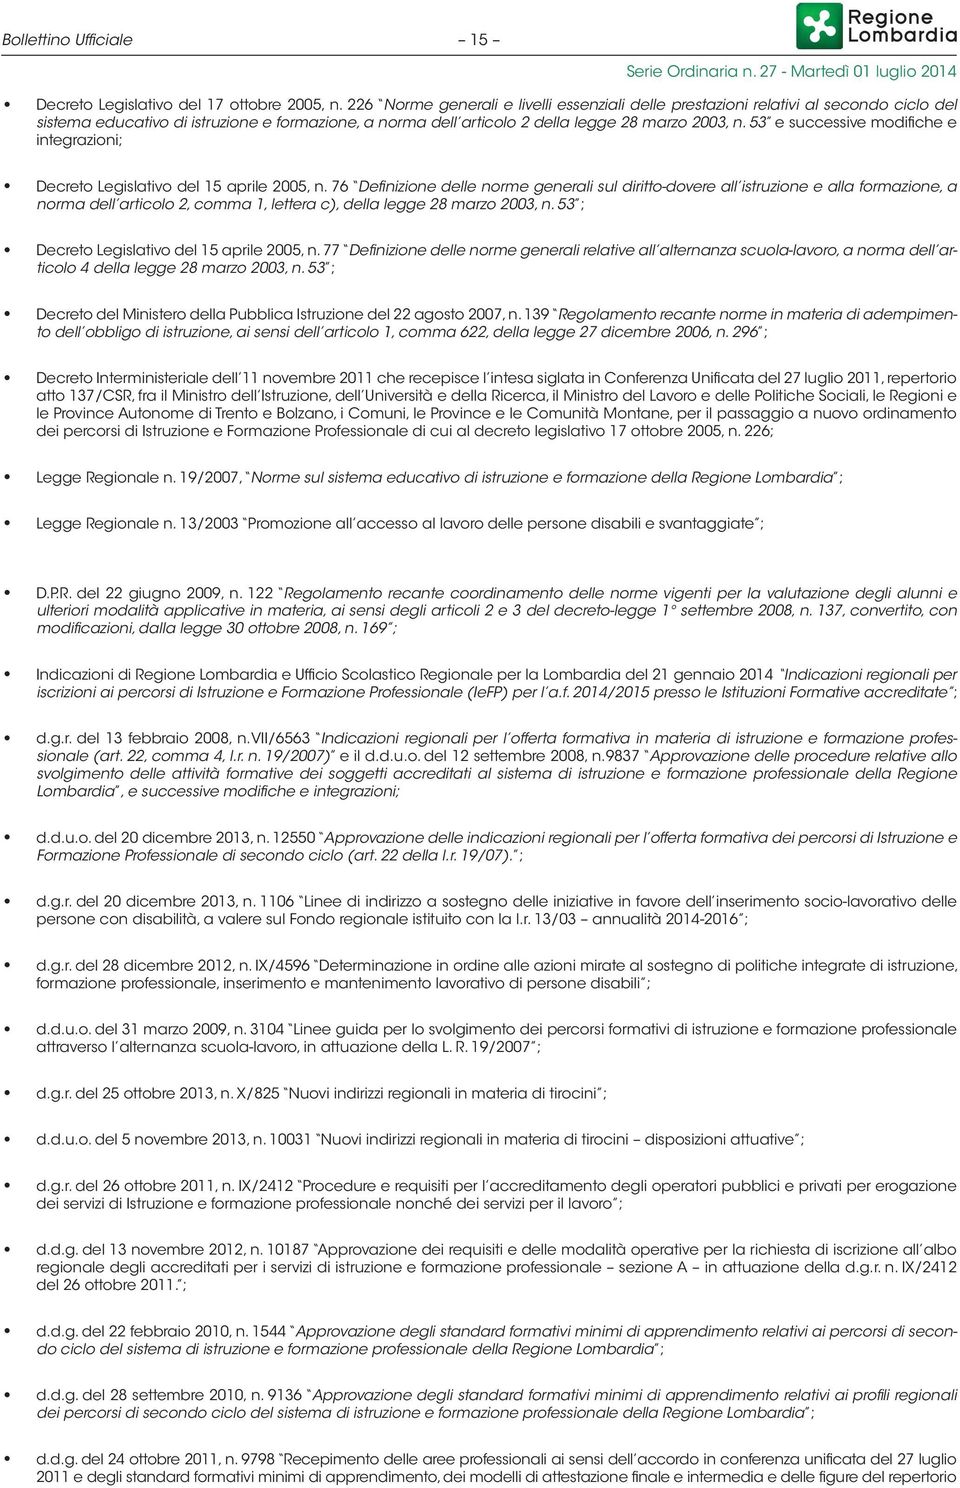 53 e successive modifiche e integrazioni; Decreto Legislativo del 15 aprile 2005, n.